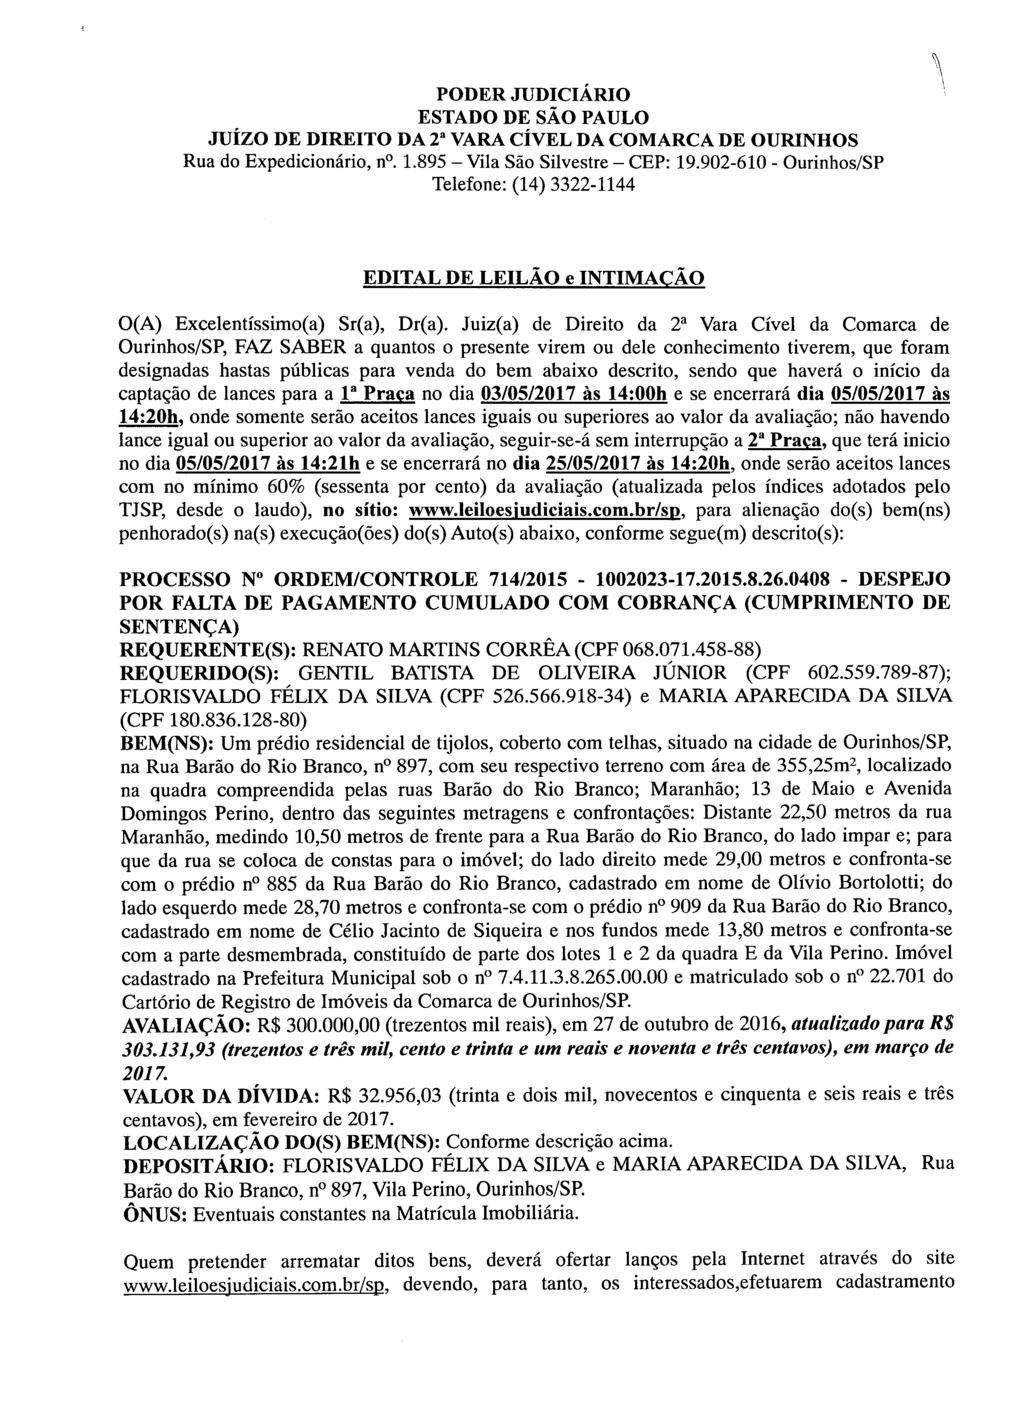 fls. 78 Este documento foi protocolado em 05/04/2017 às 15:23, é cópia do original assinado digitalmente por CAIUBI RABELO DE SOUZA.